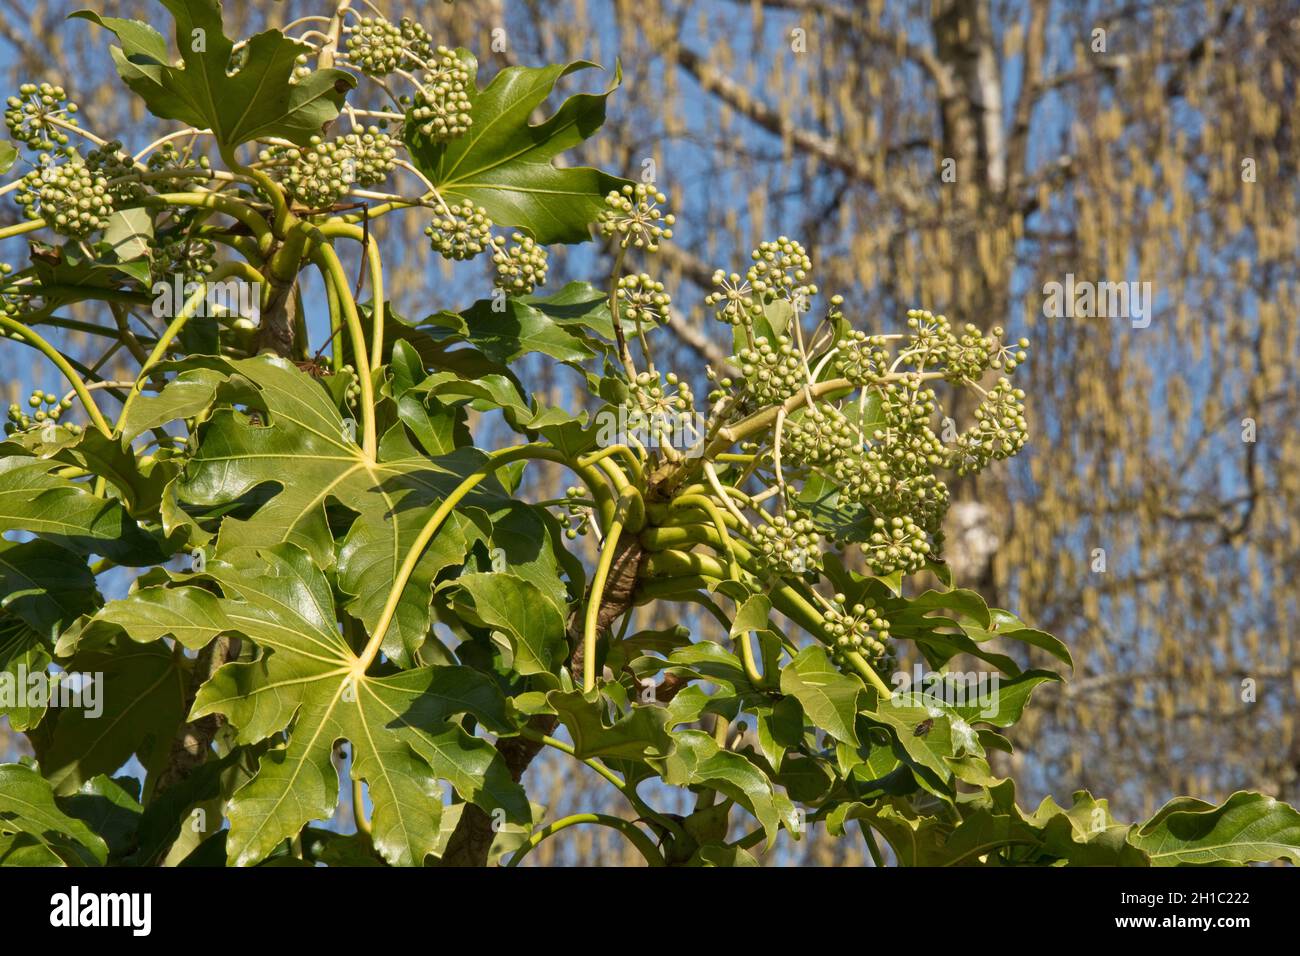 Planta de aceite de castor falso (Fatsia japonica) hojas verdes brillantes de lóbulos pálidos y racimos verdes inmaduros de fruta, Berkshire, abril Foto de stock